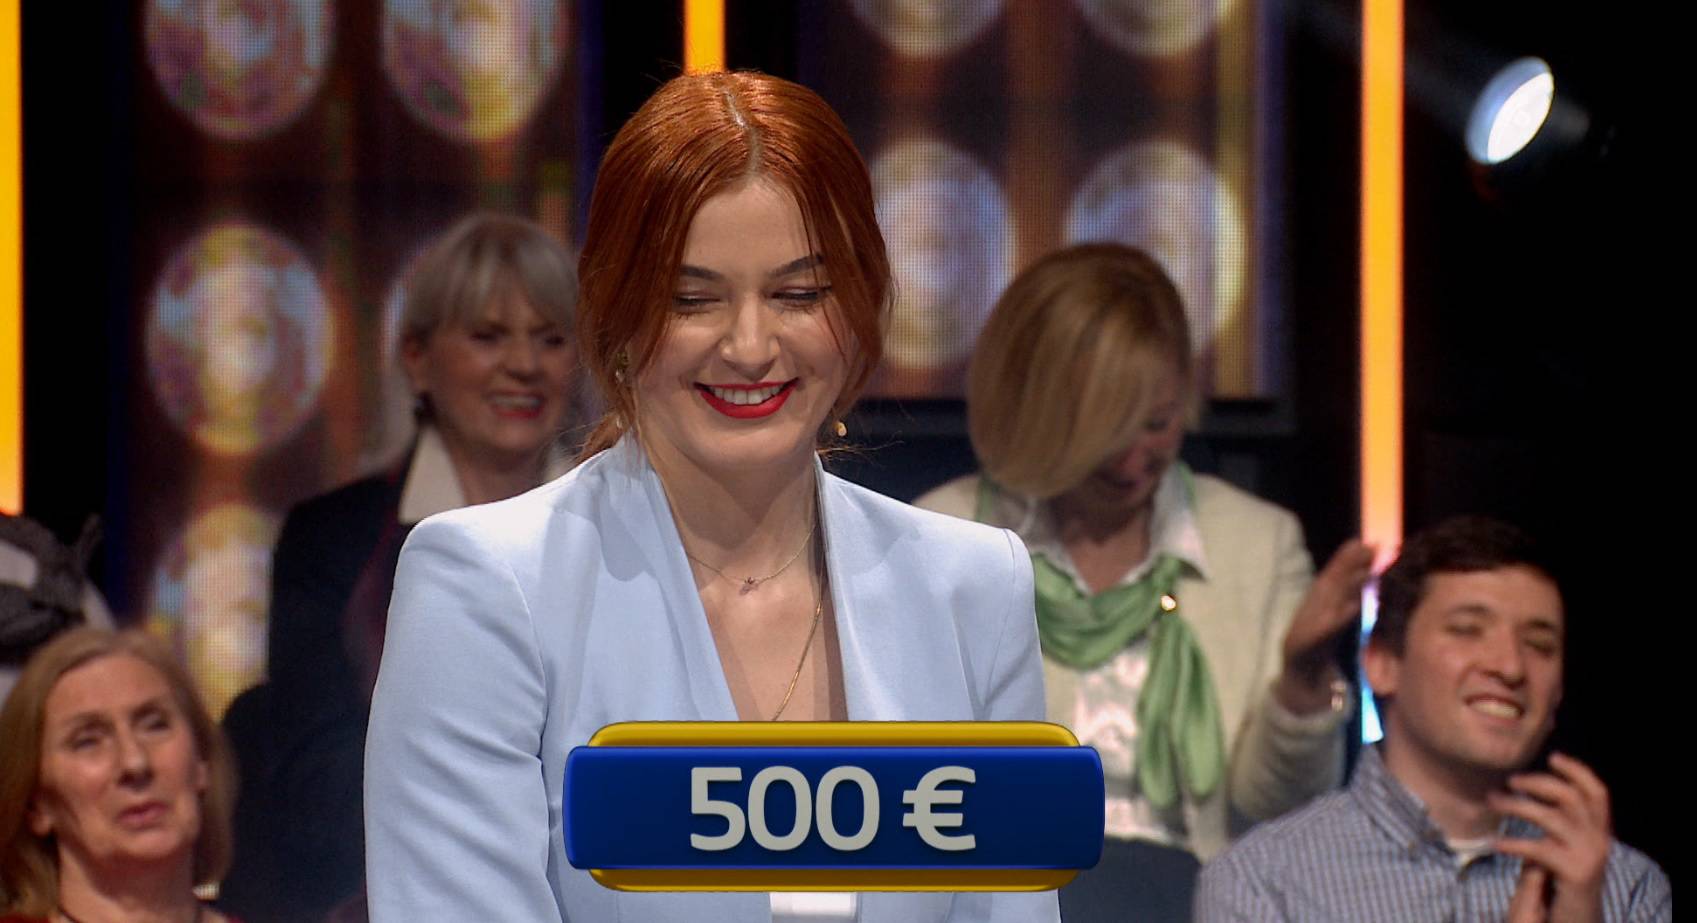 Stomatologinja Zrinka posrnula na posljednjem pitanju u showu 'Joker' i otišla kući s 500 eura